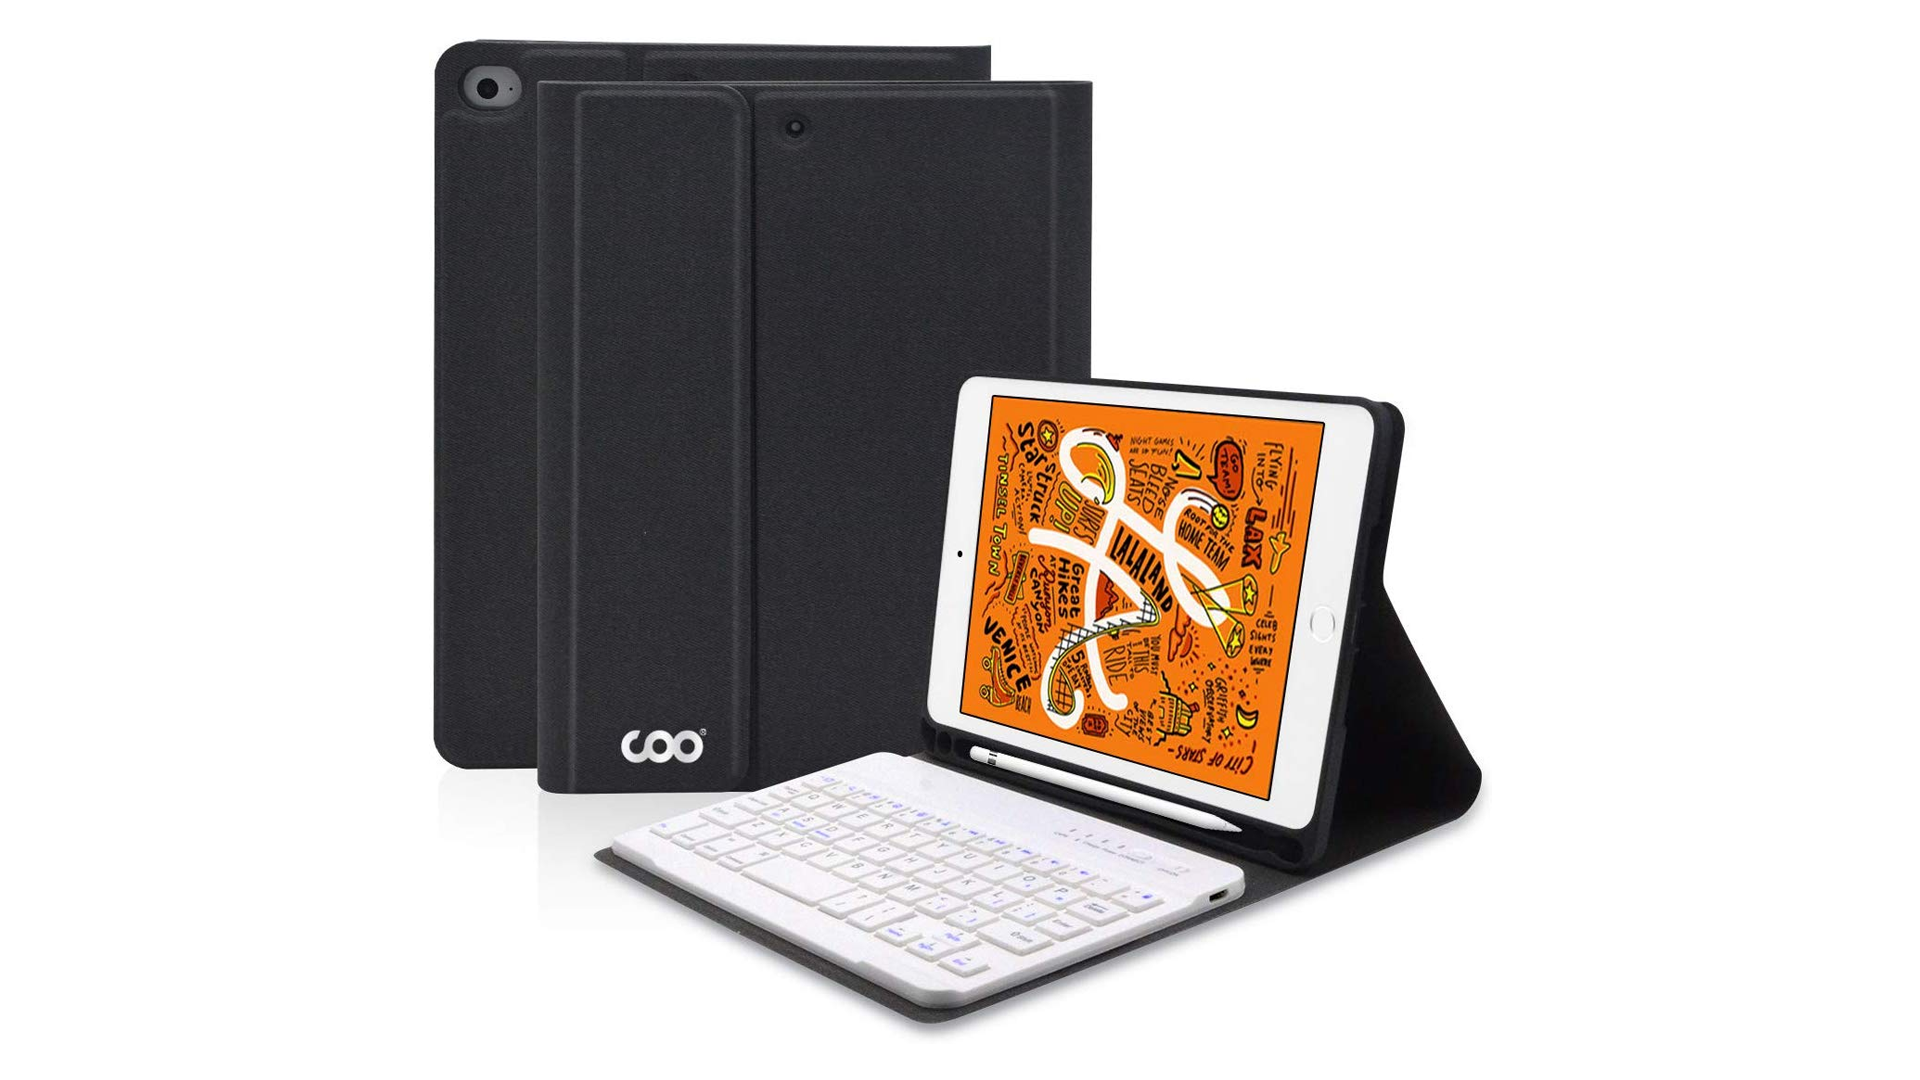 The COO iPad Mini Keyboard Case